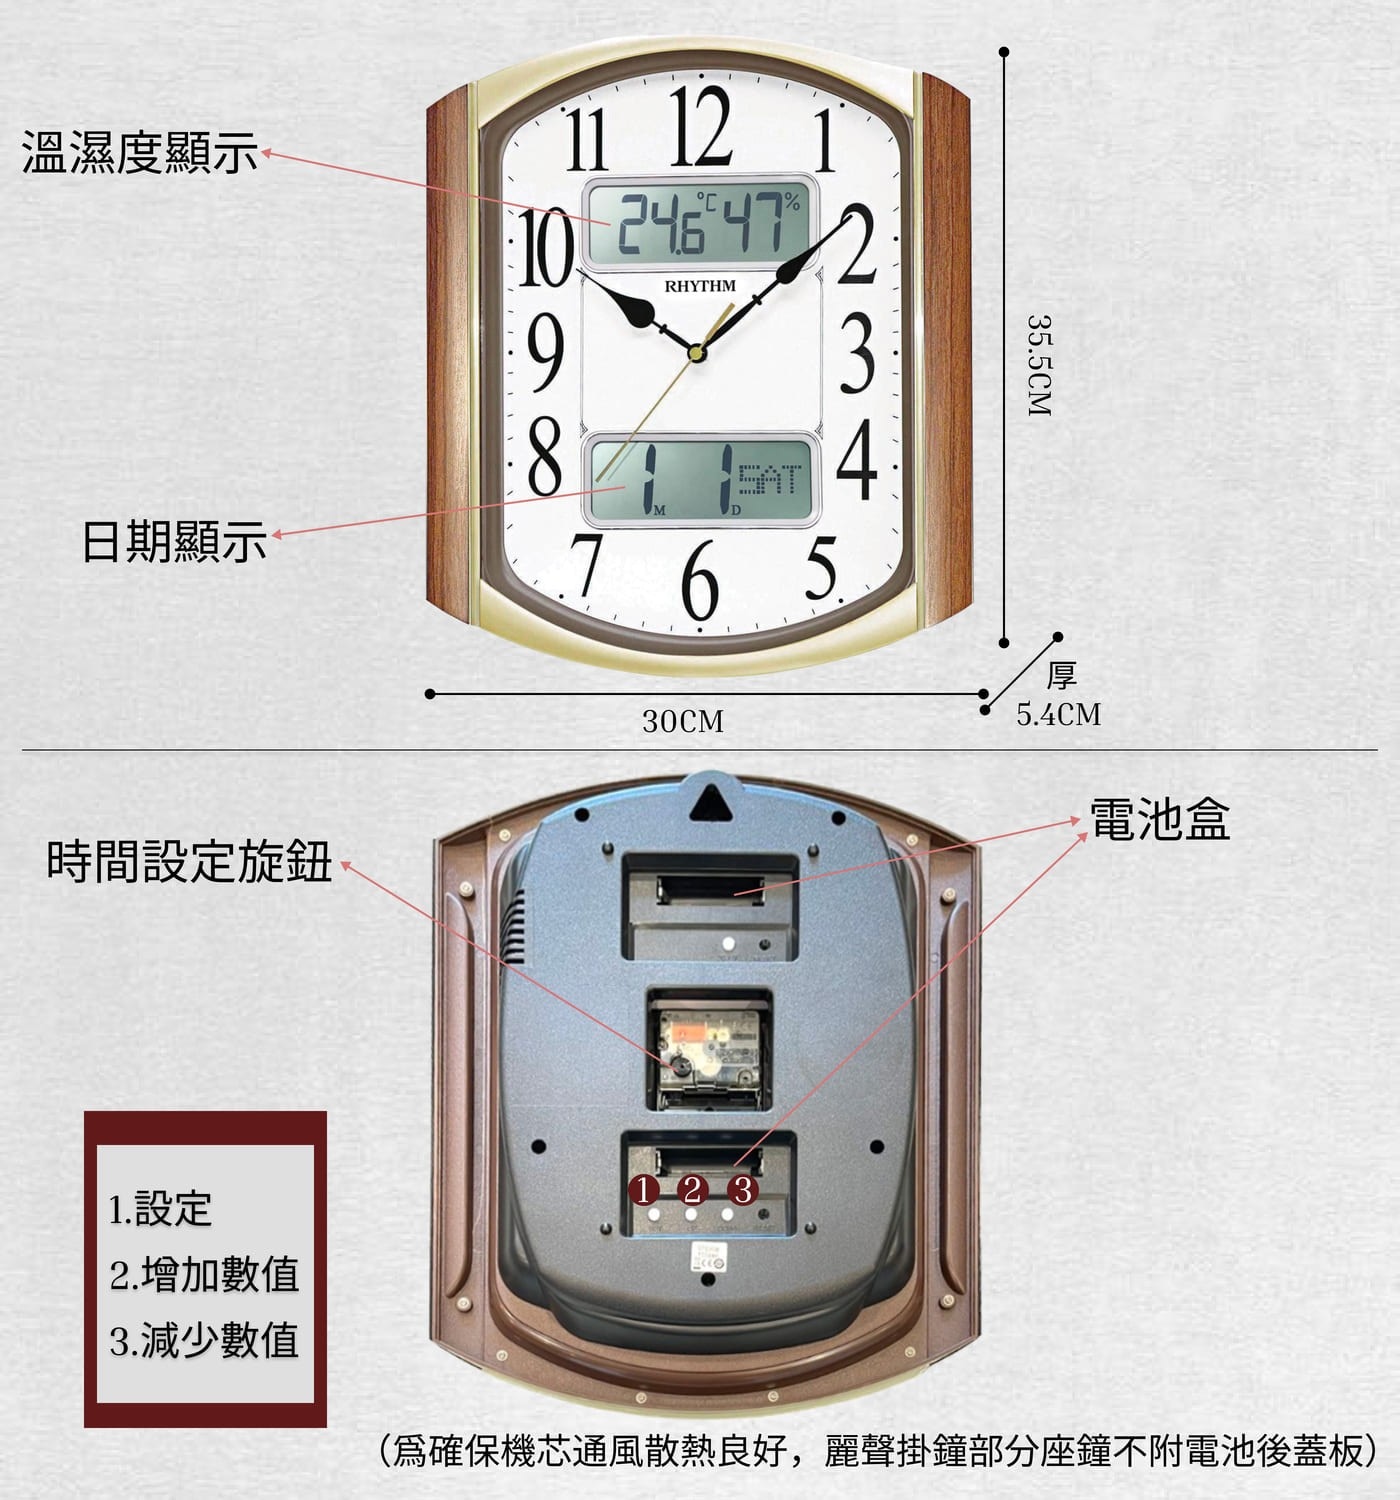 麗聲鐘多功能溫濕度掛鐘 #CFG708多種顏色選擇簡單設計日期溫度顯示可亮度控制電子鐘